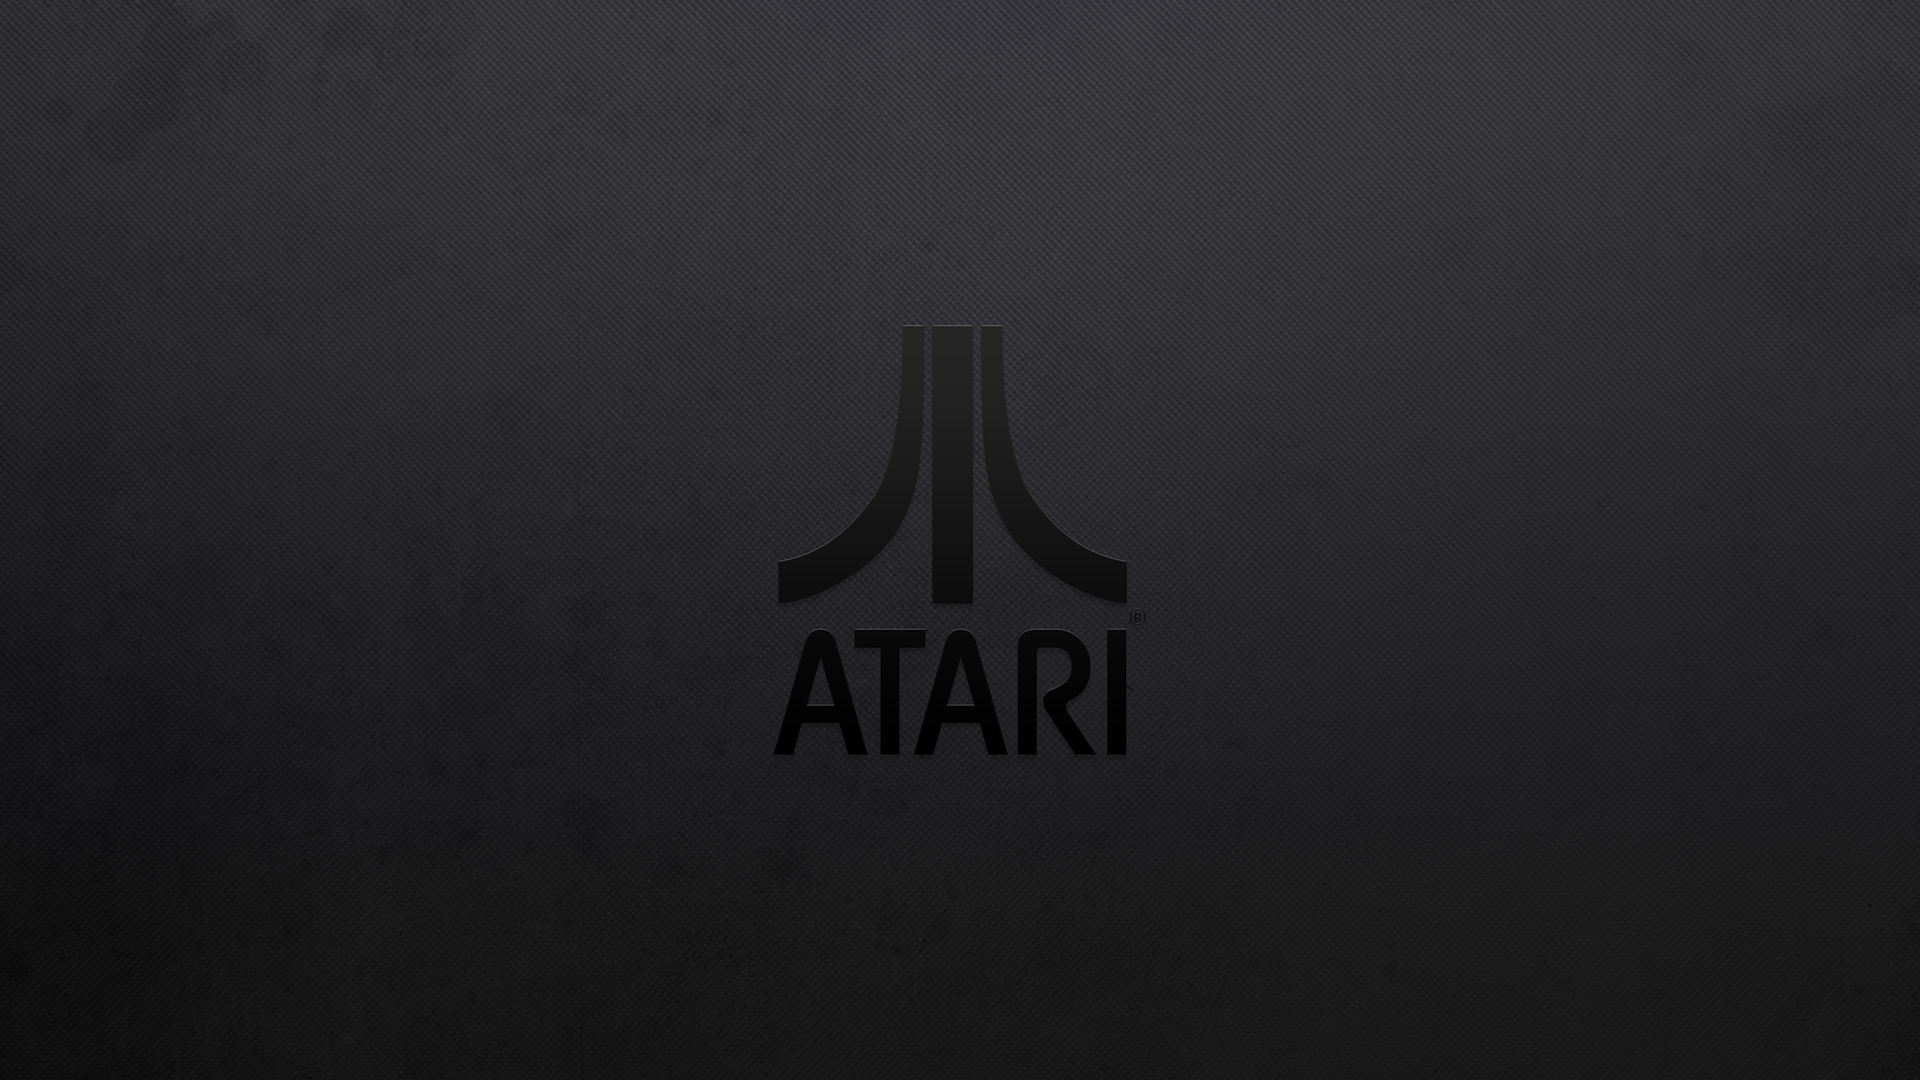 Video Game Atari Wallpaper